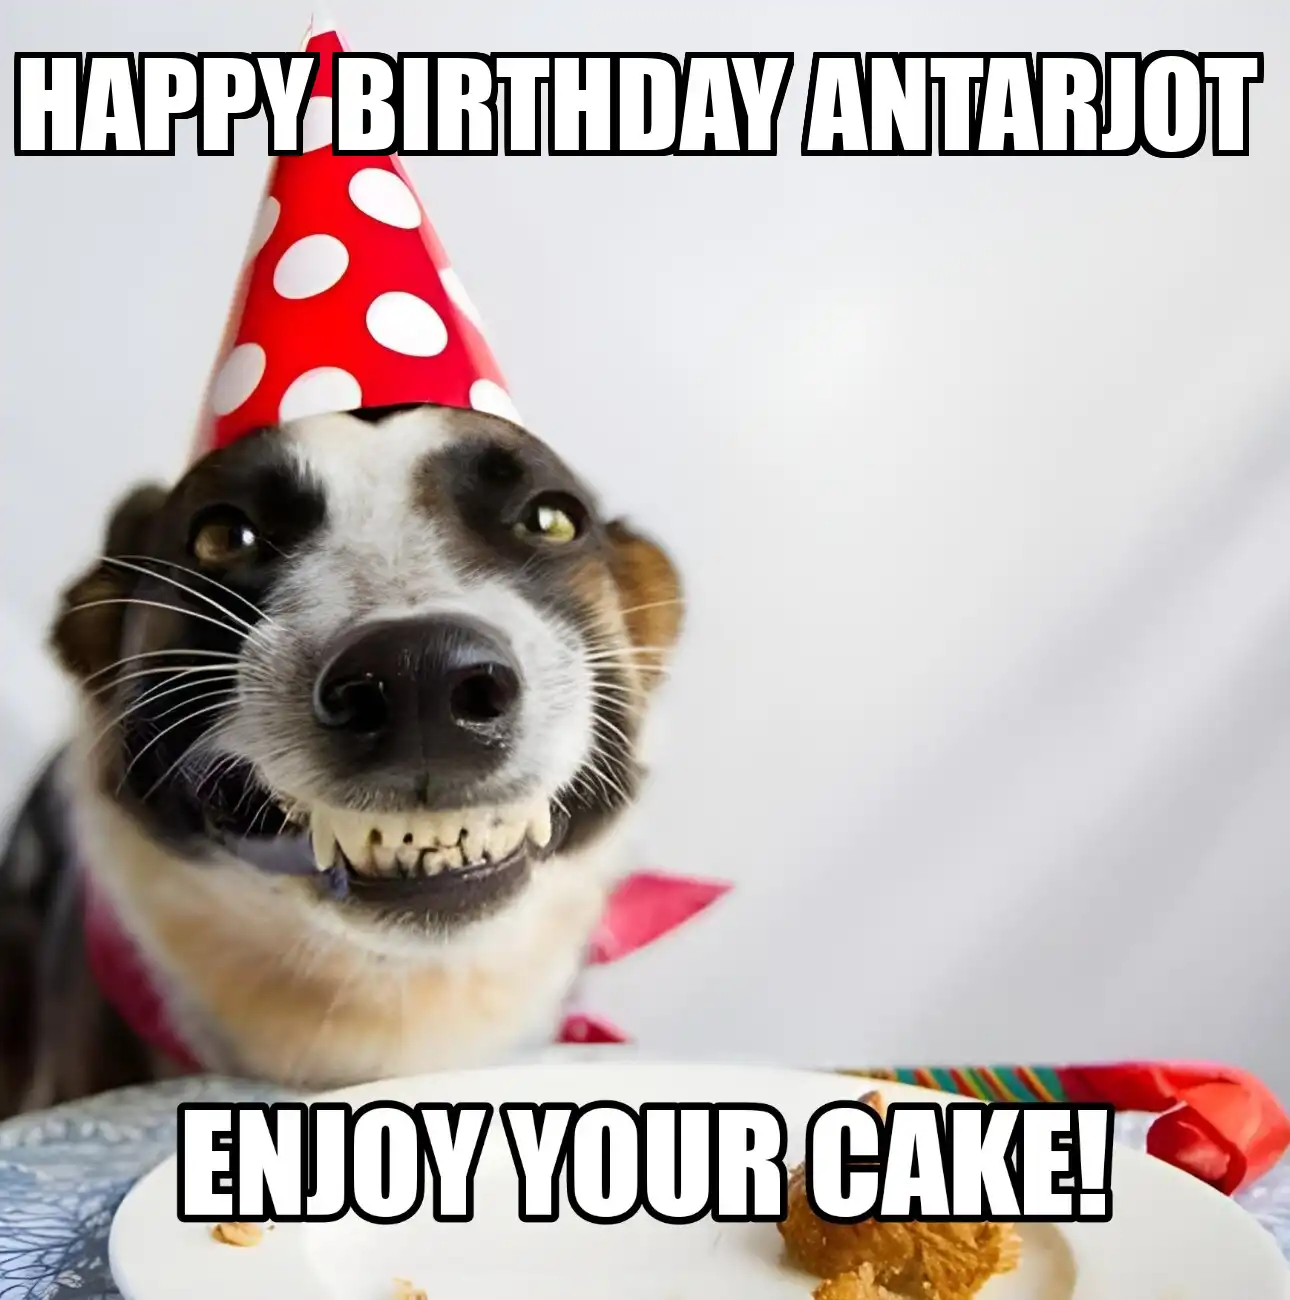 Happy Birthday Antarjot Enjoy Your Cake Dog Meme